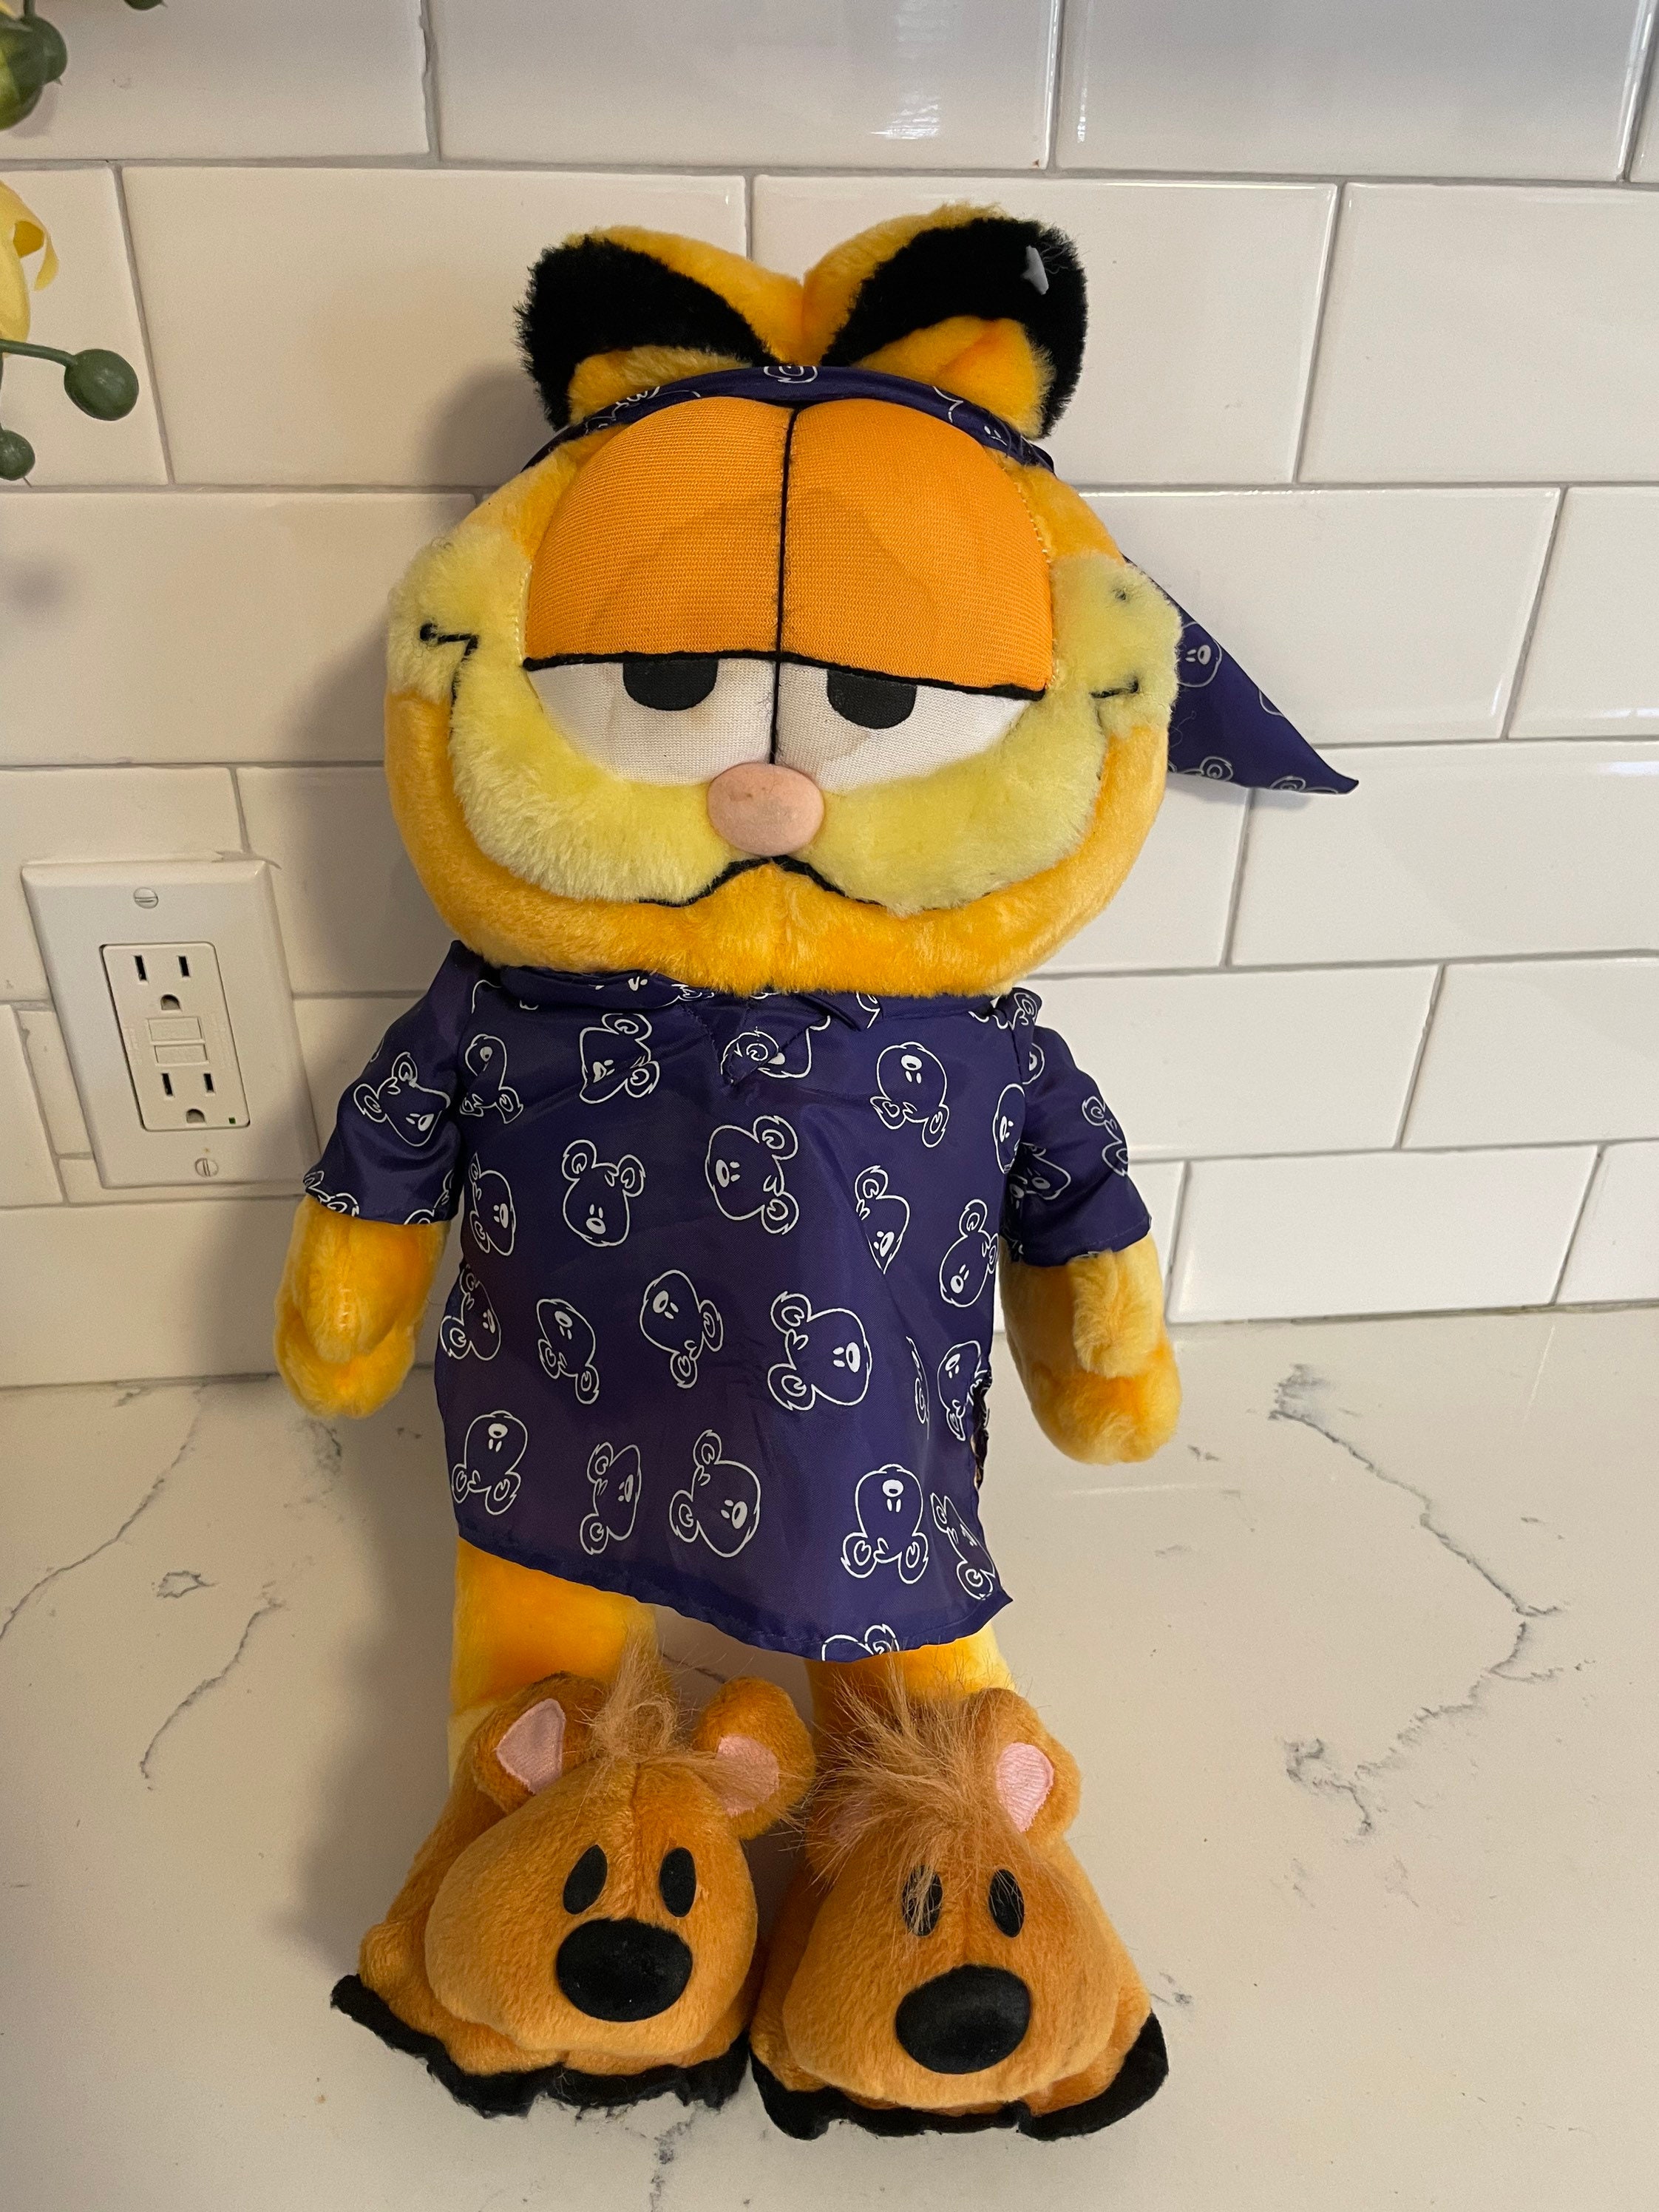 Peluche Vintage (25 cm) - Garfield sur ses 4 pattes 